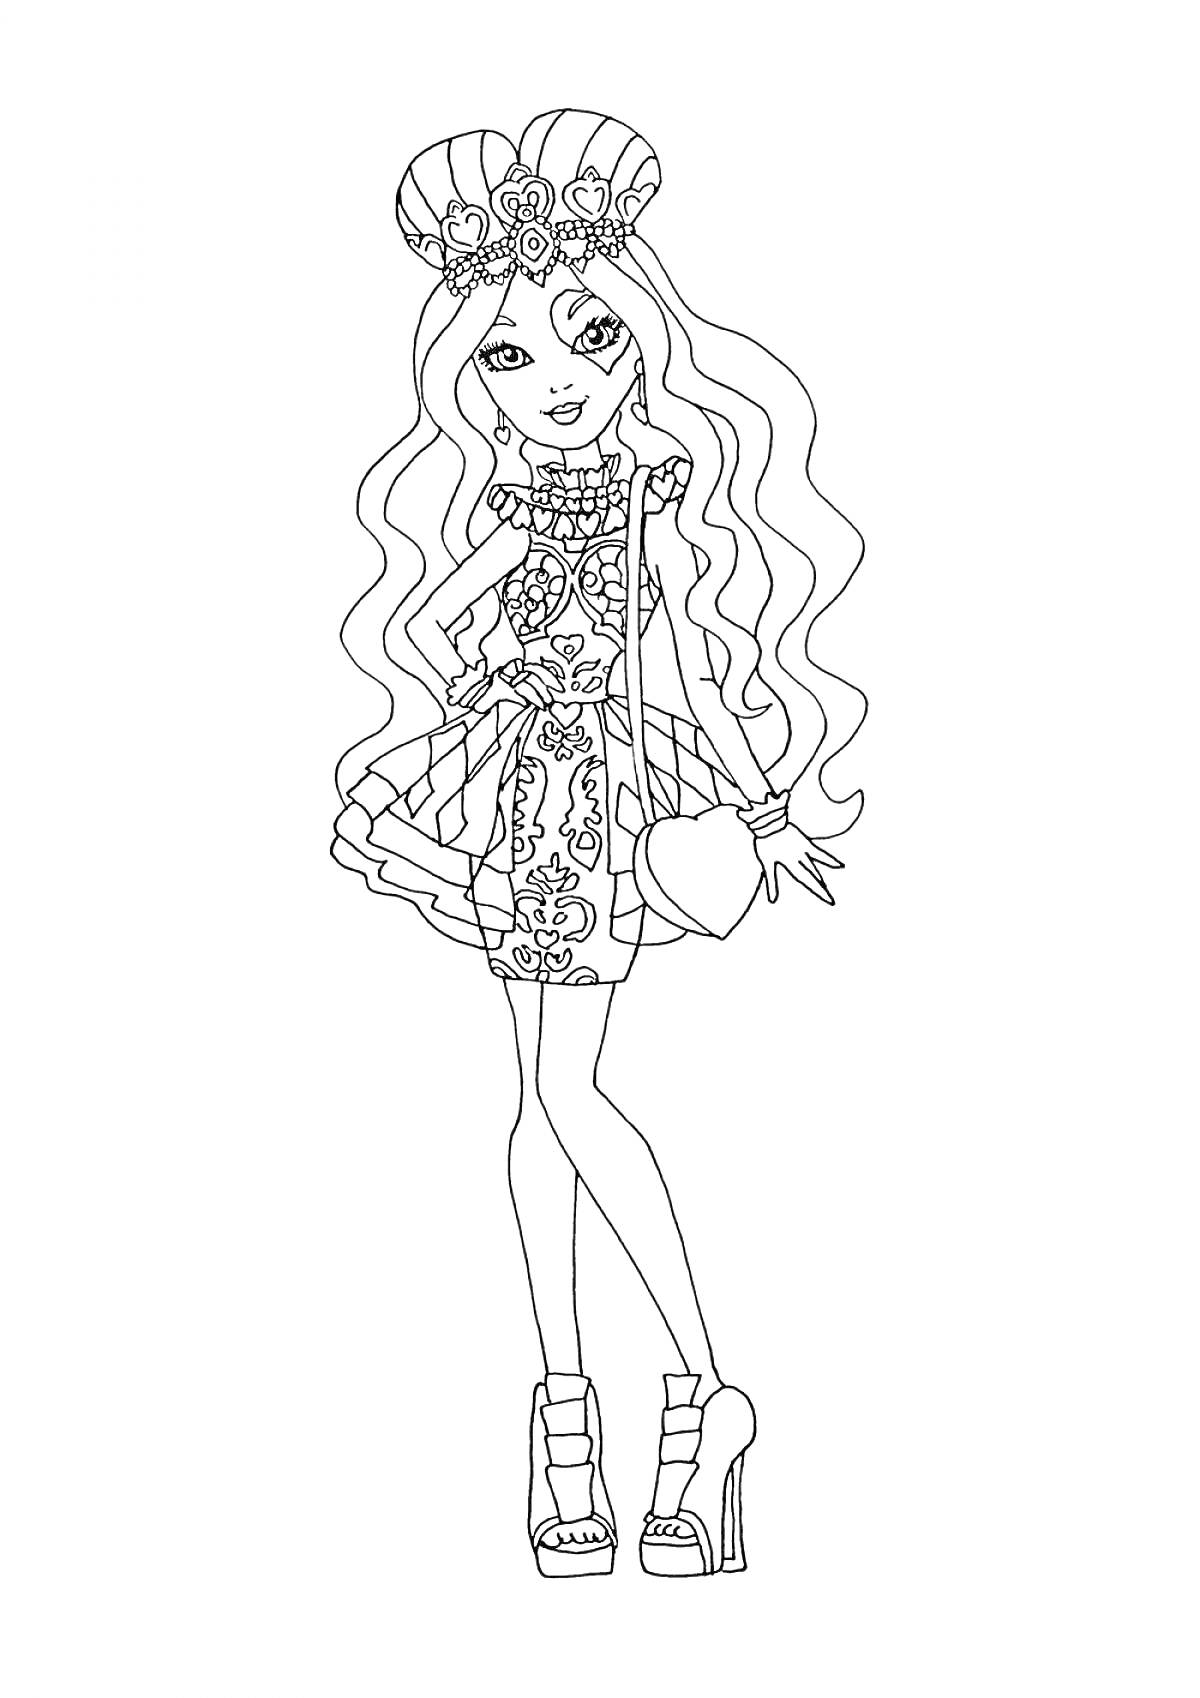 Раскраска Девушка из Эвер Афтер Хай в короне, с длинными волнистыми волосами, в платье с цветочным узором, на высоких каблуках, с маленькой сумочкой-сердцем.